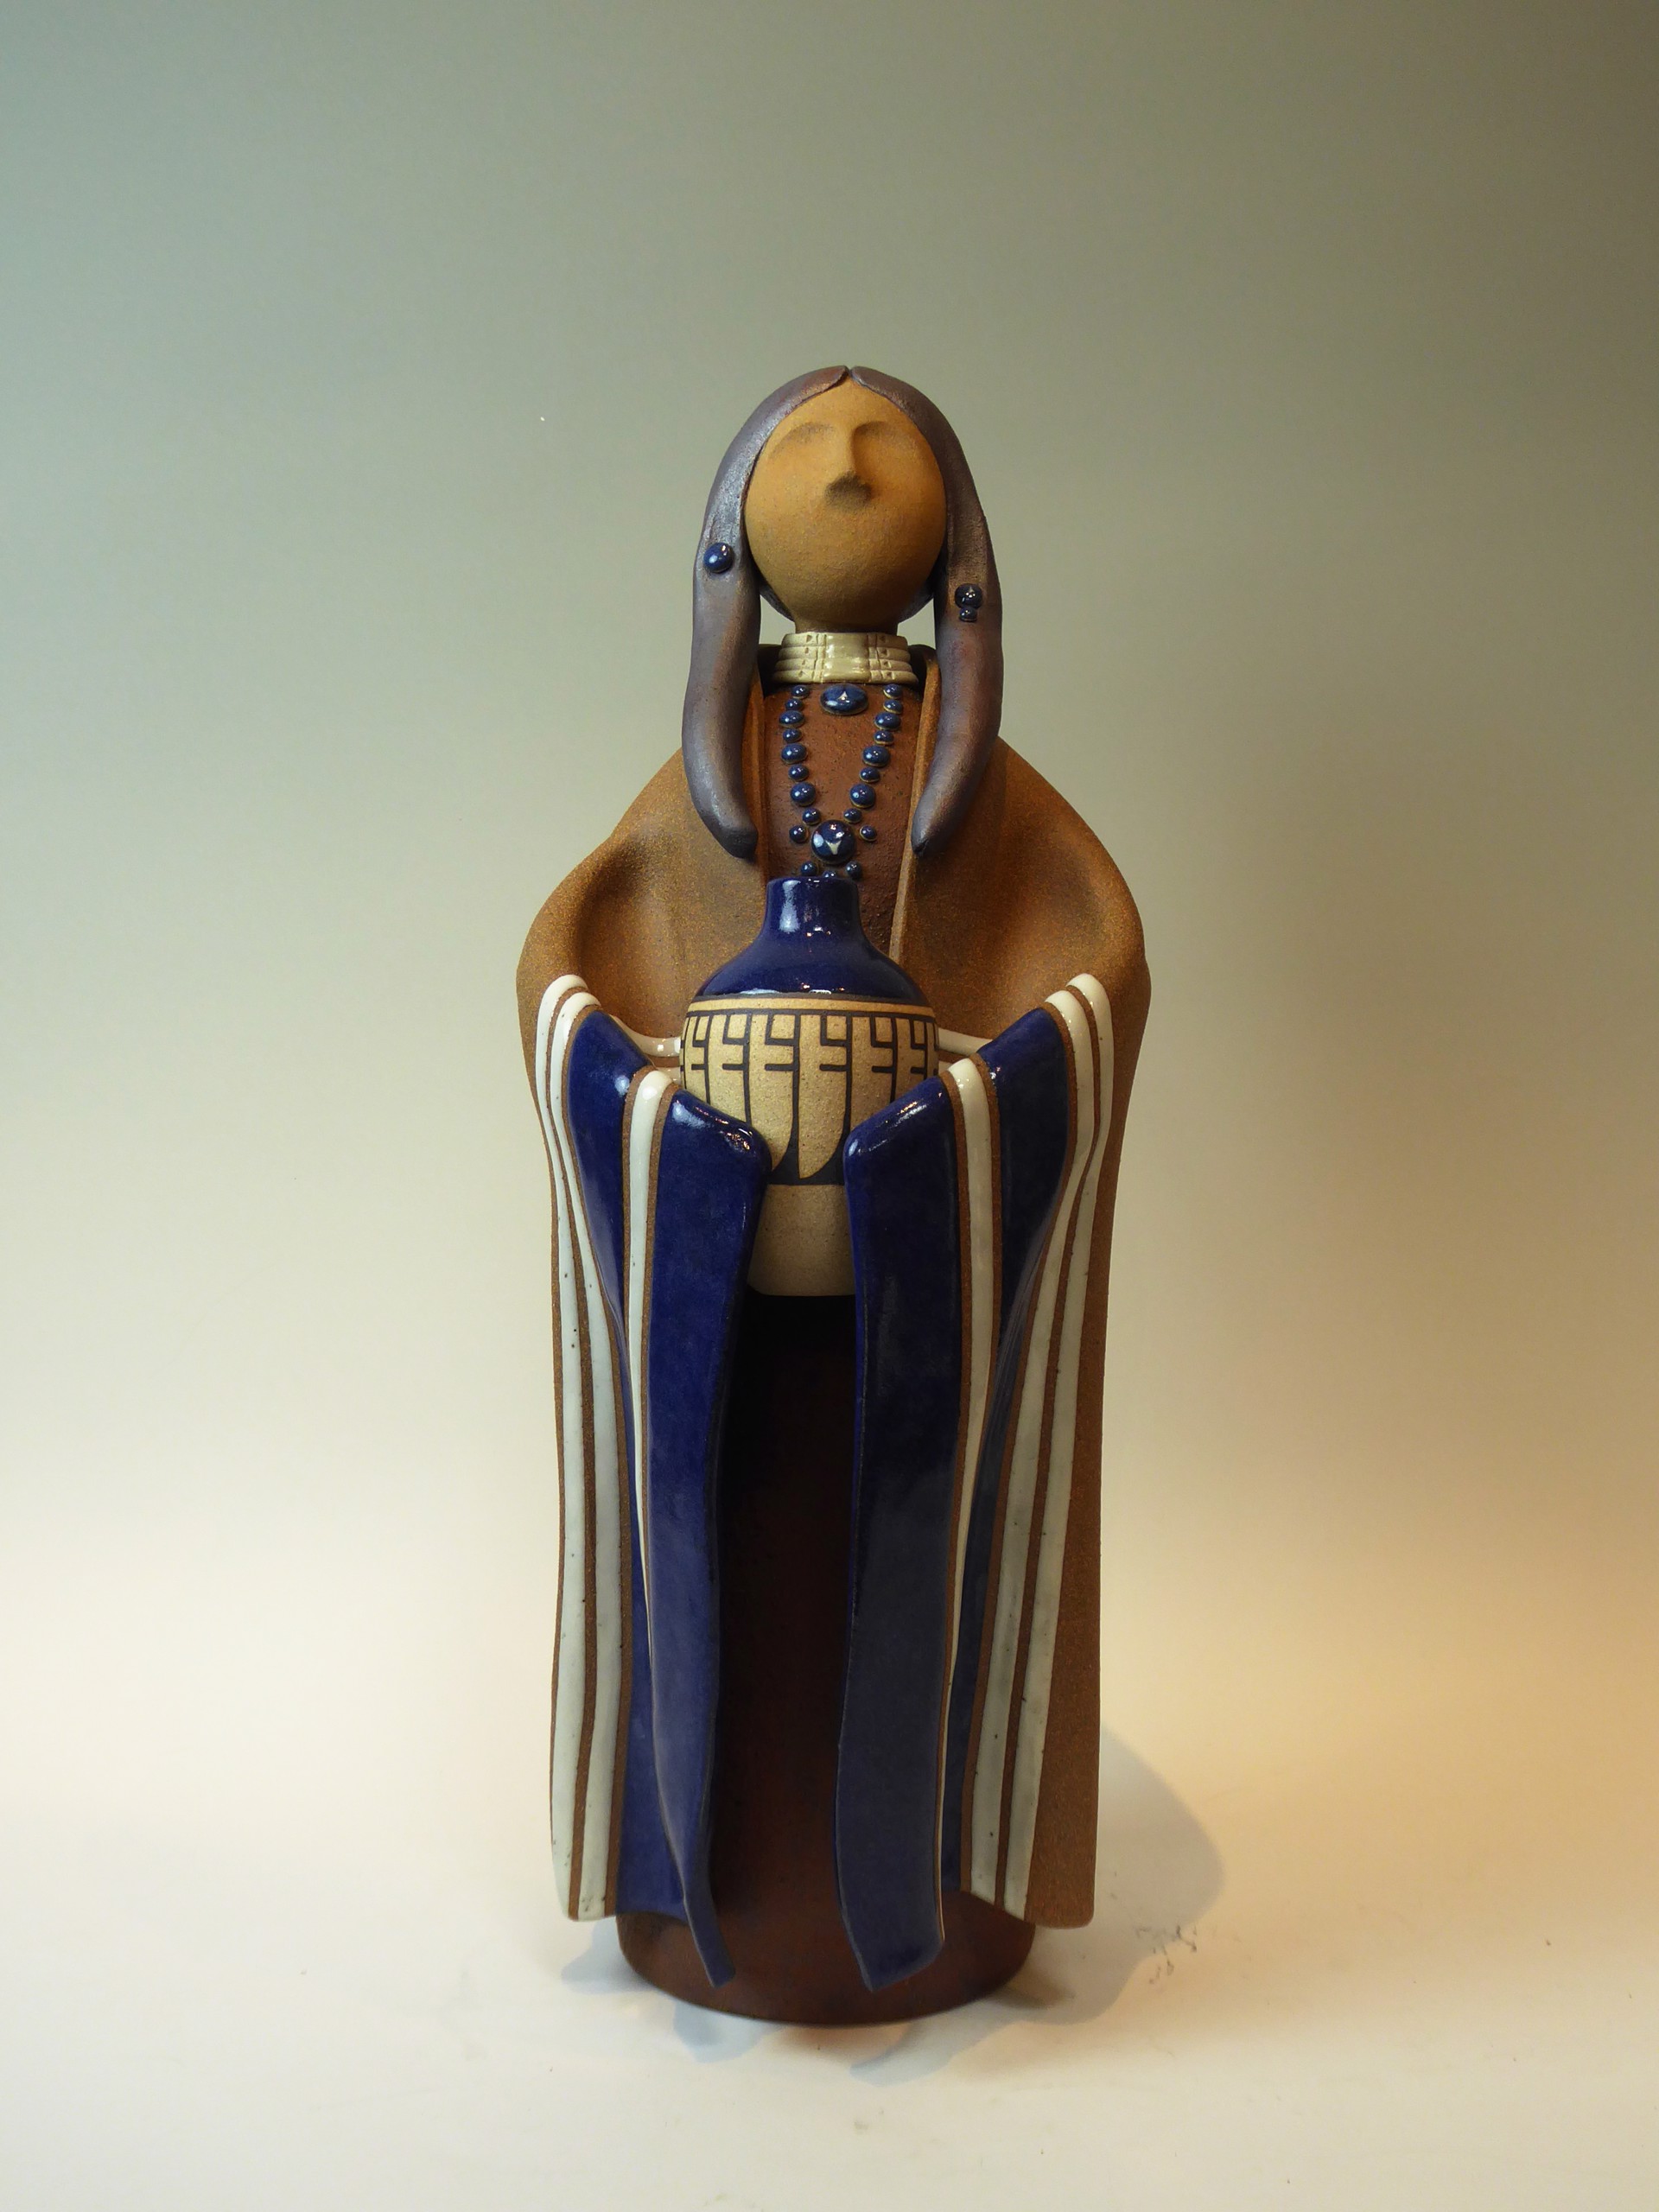 Lakota Woman by Terry Slonaker